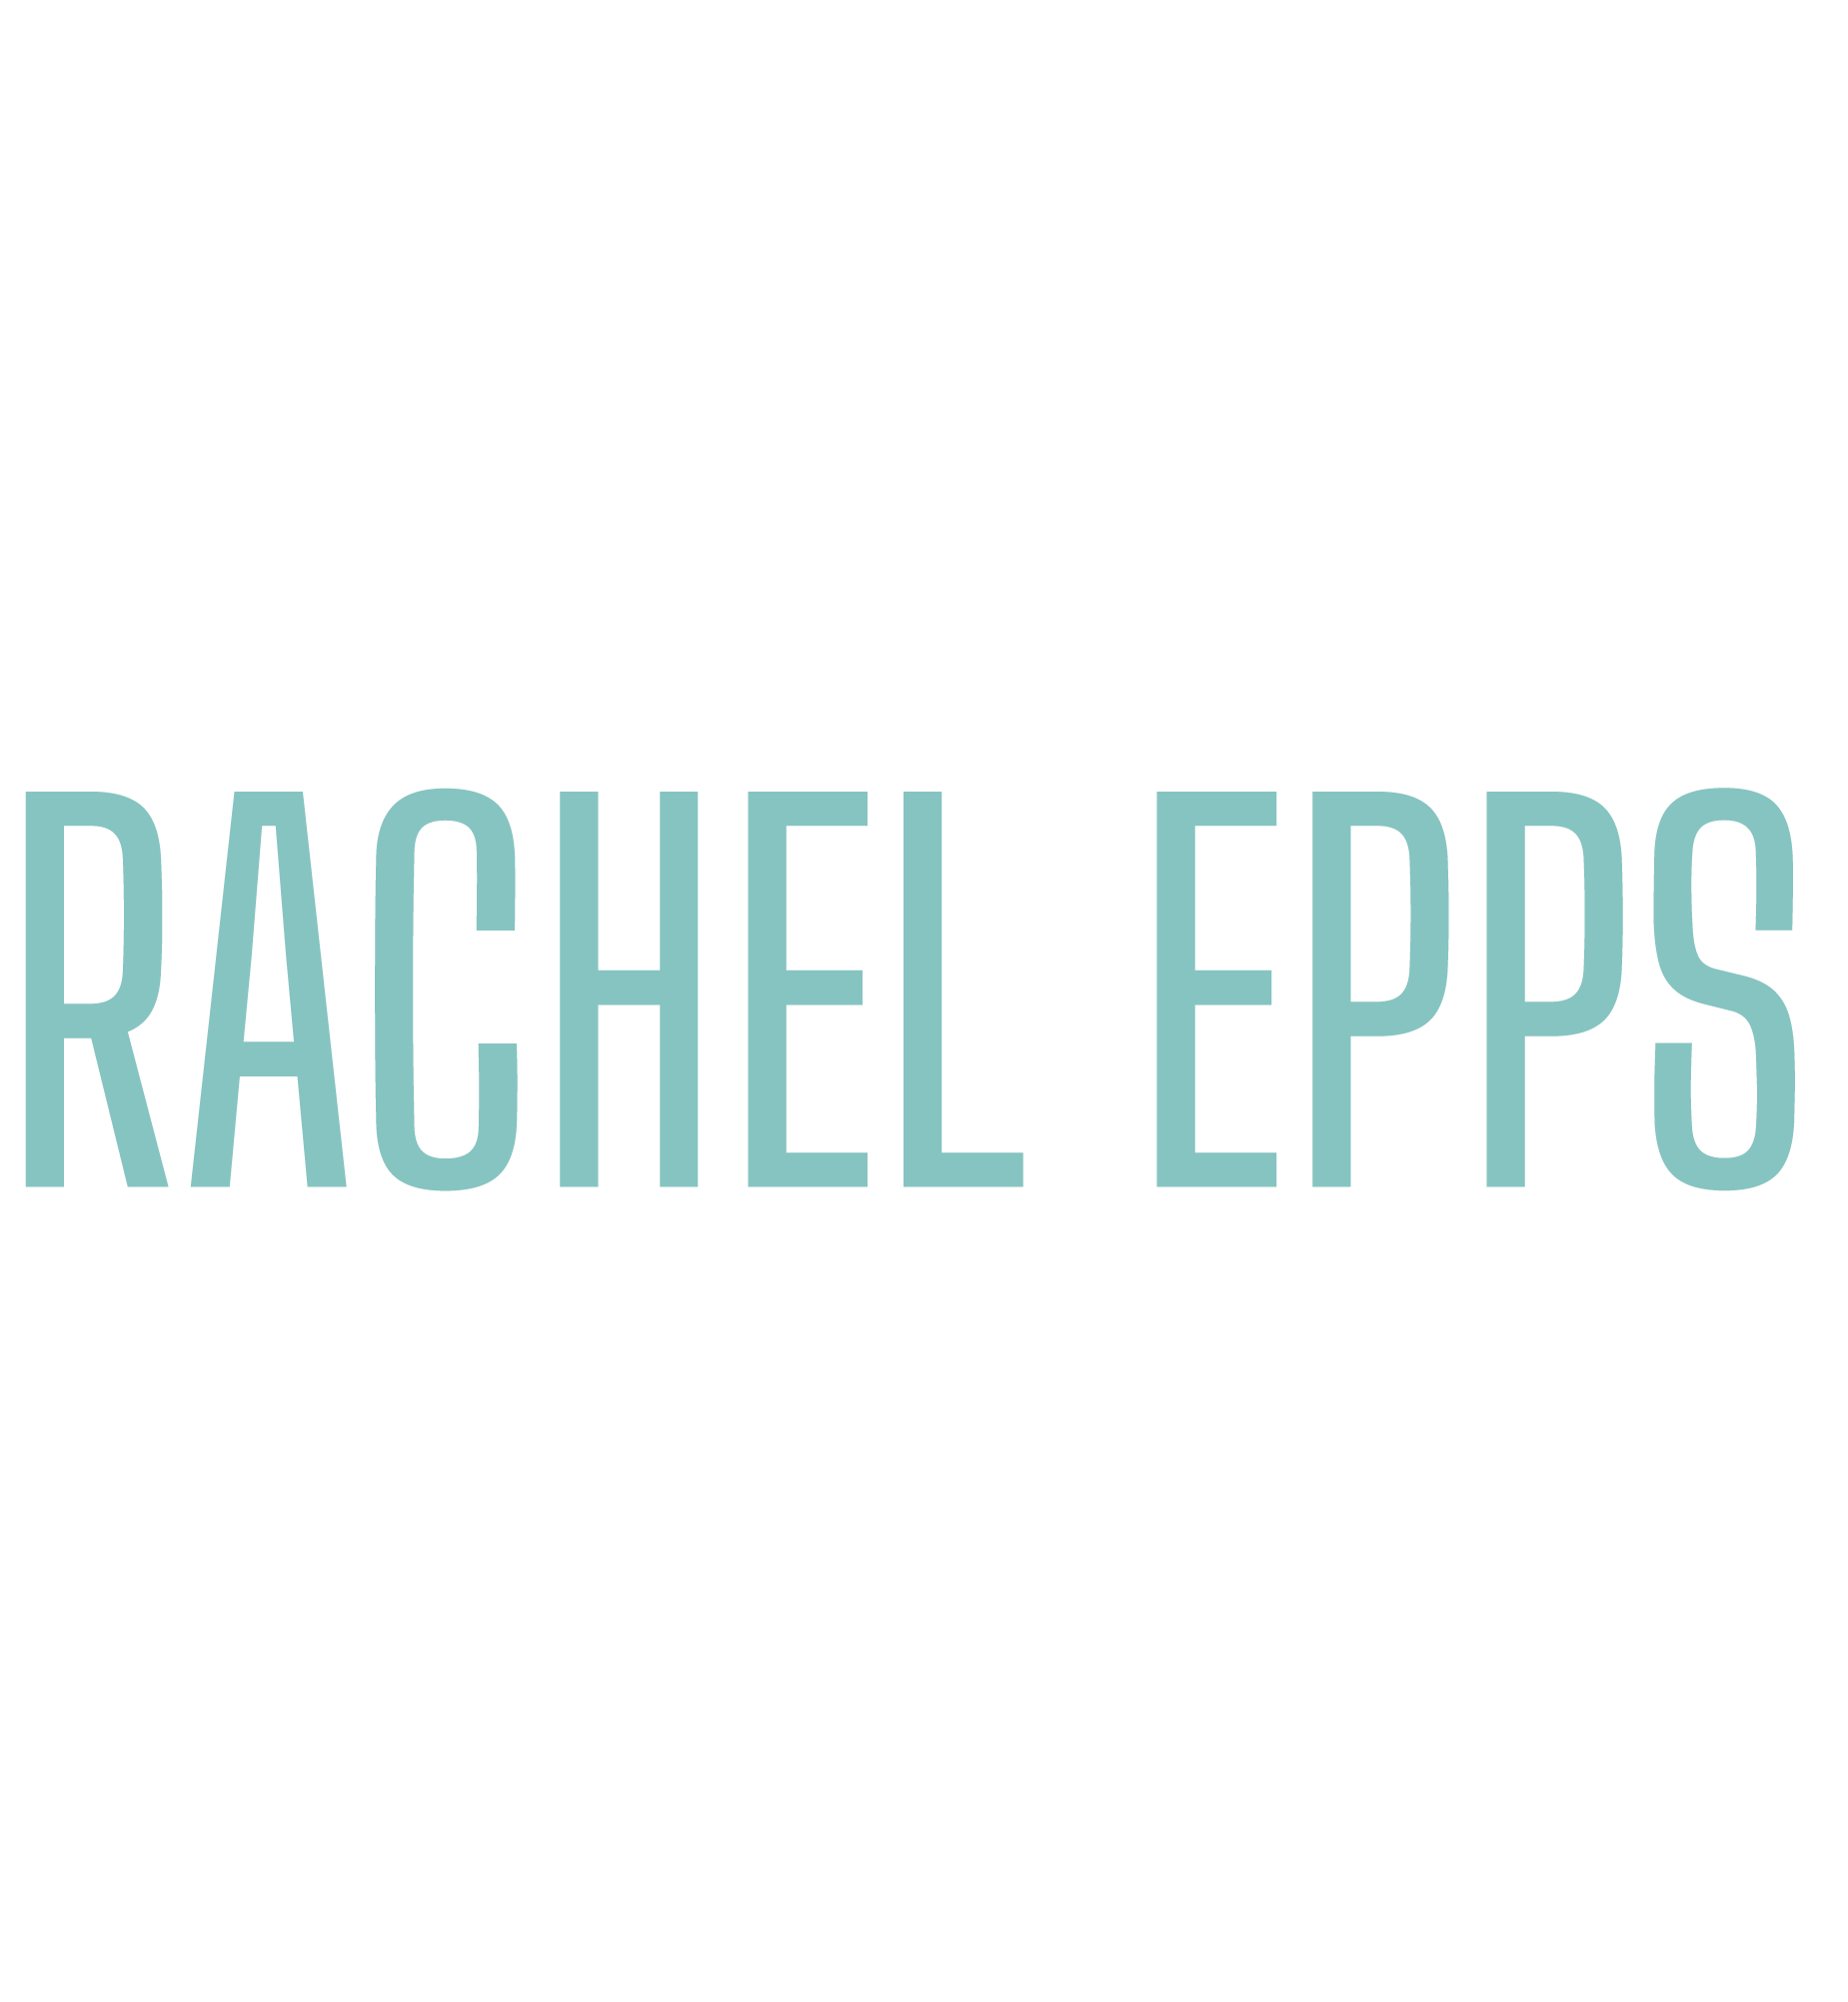 Rachel Epps